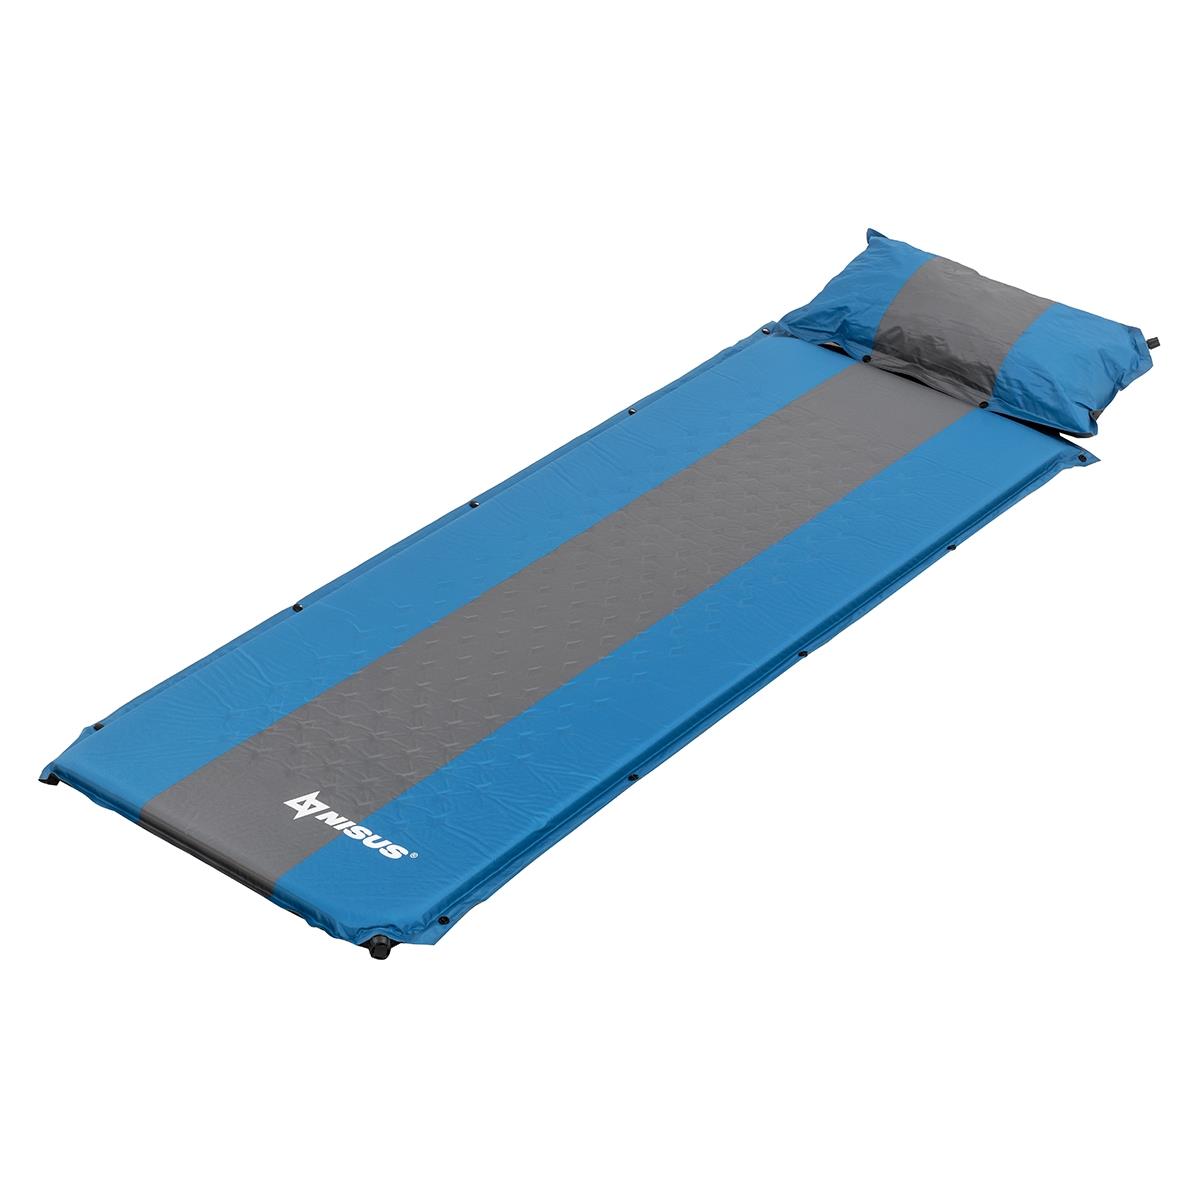 Коврик самонадув. с подушкой 30-170x65x4 голубой/серый (N-004P-BG) Nisus коврик для бани бацькина баня